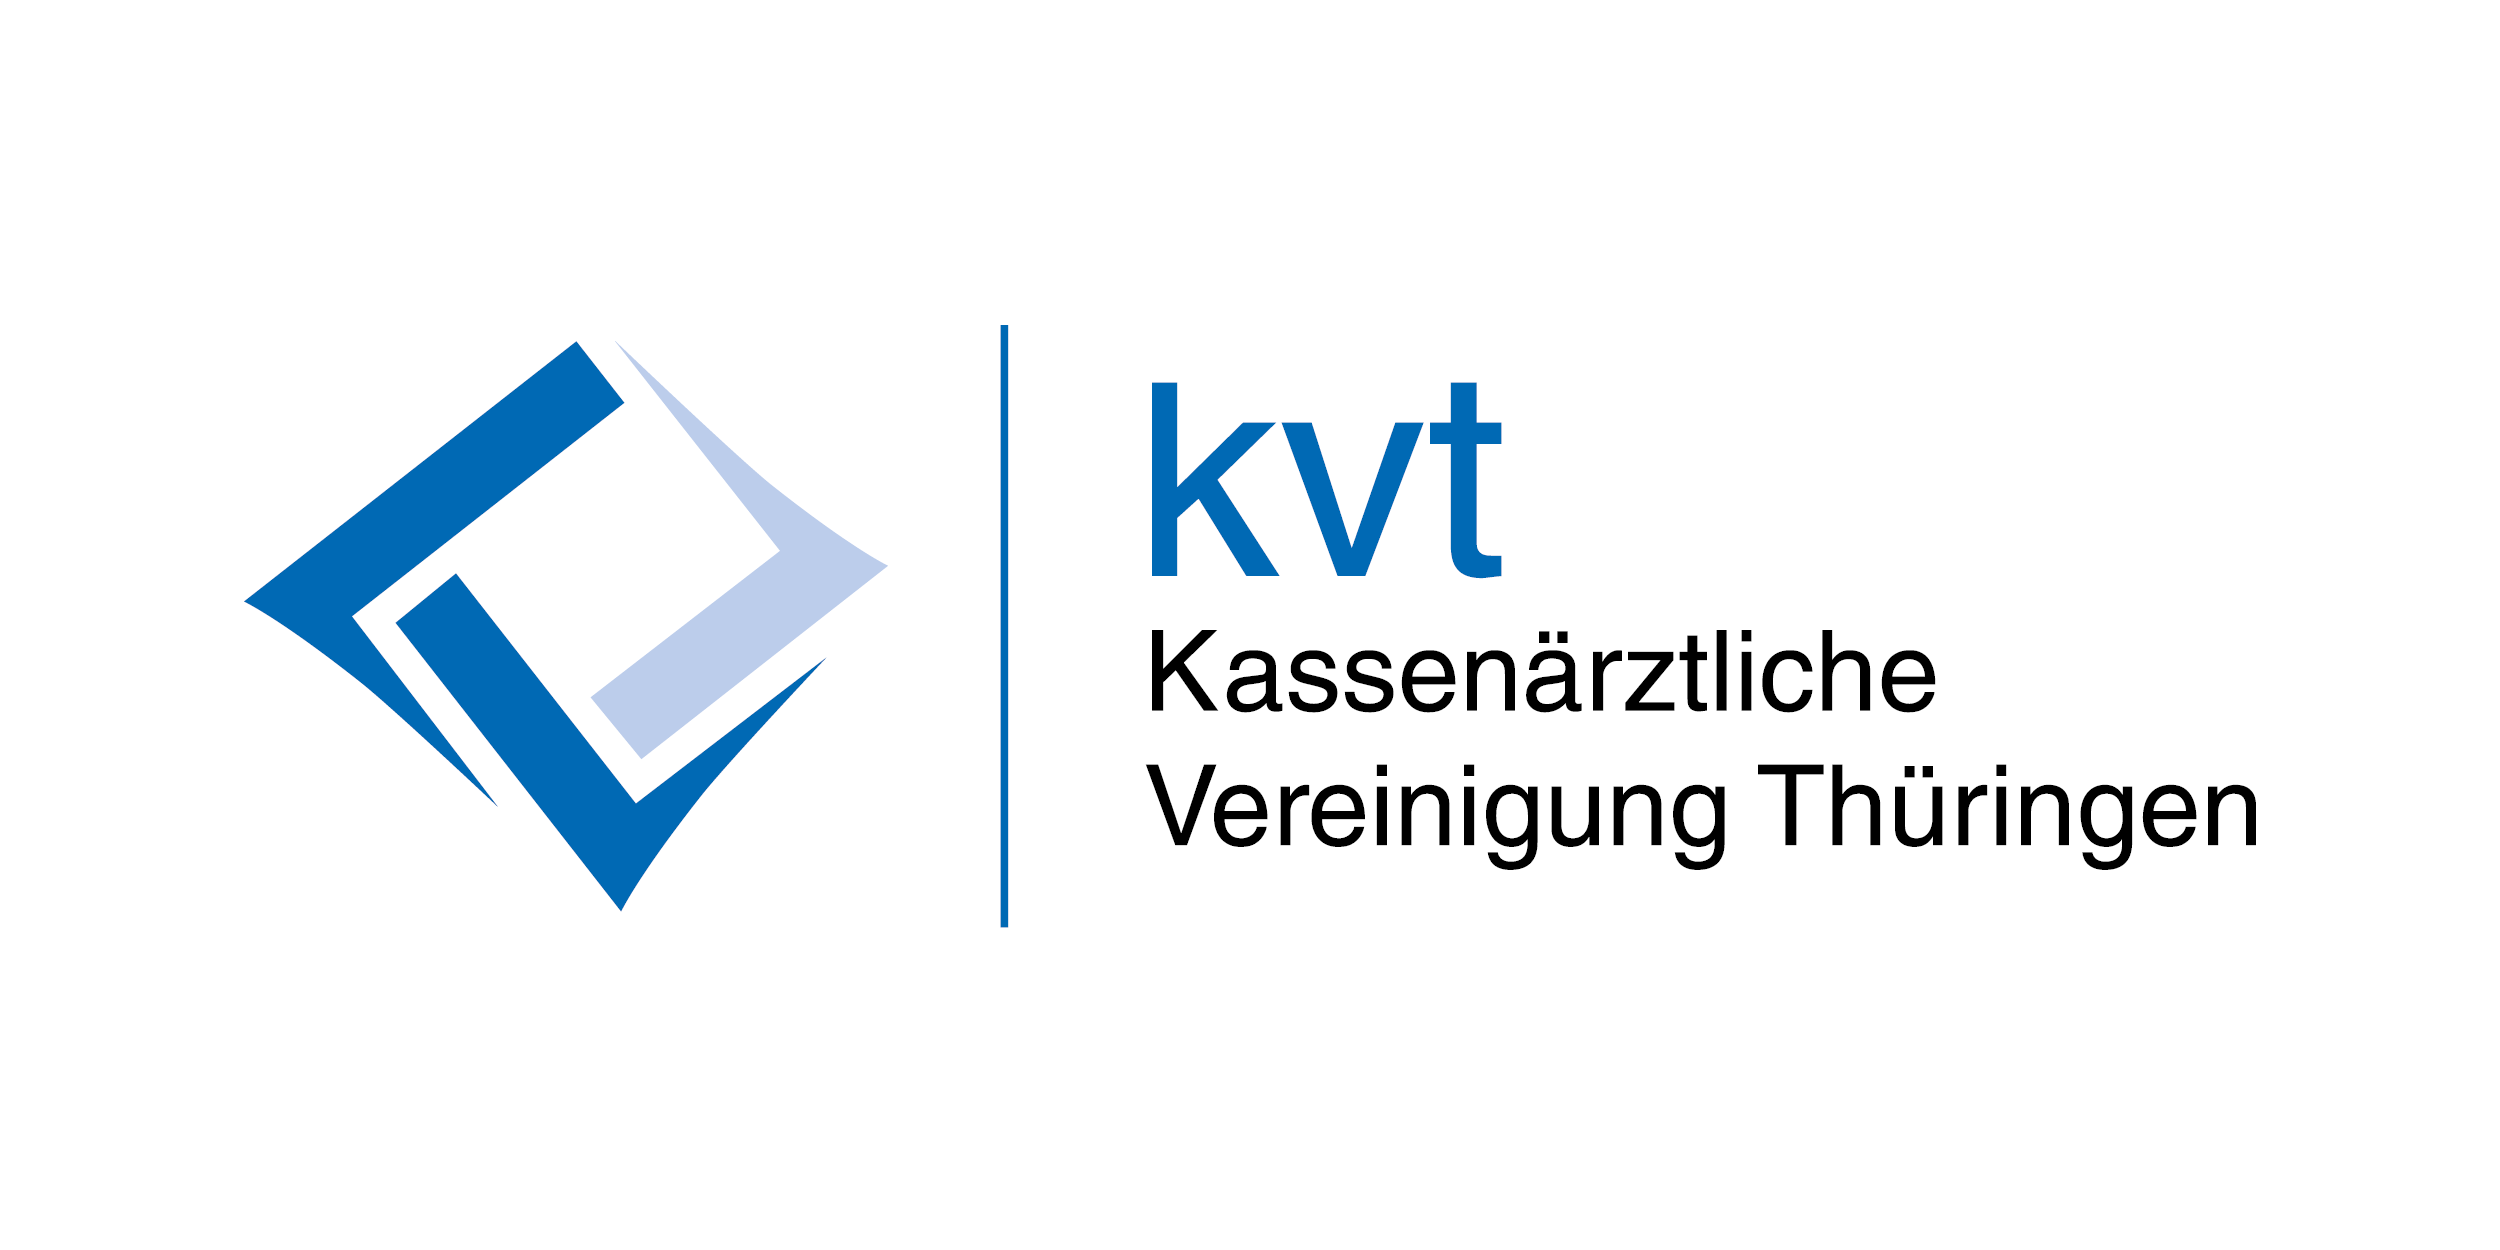 Das Bild zeigt das Logo der KV Thüringen.